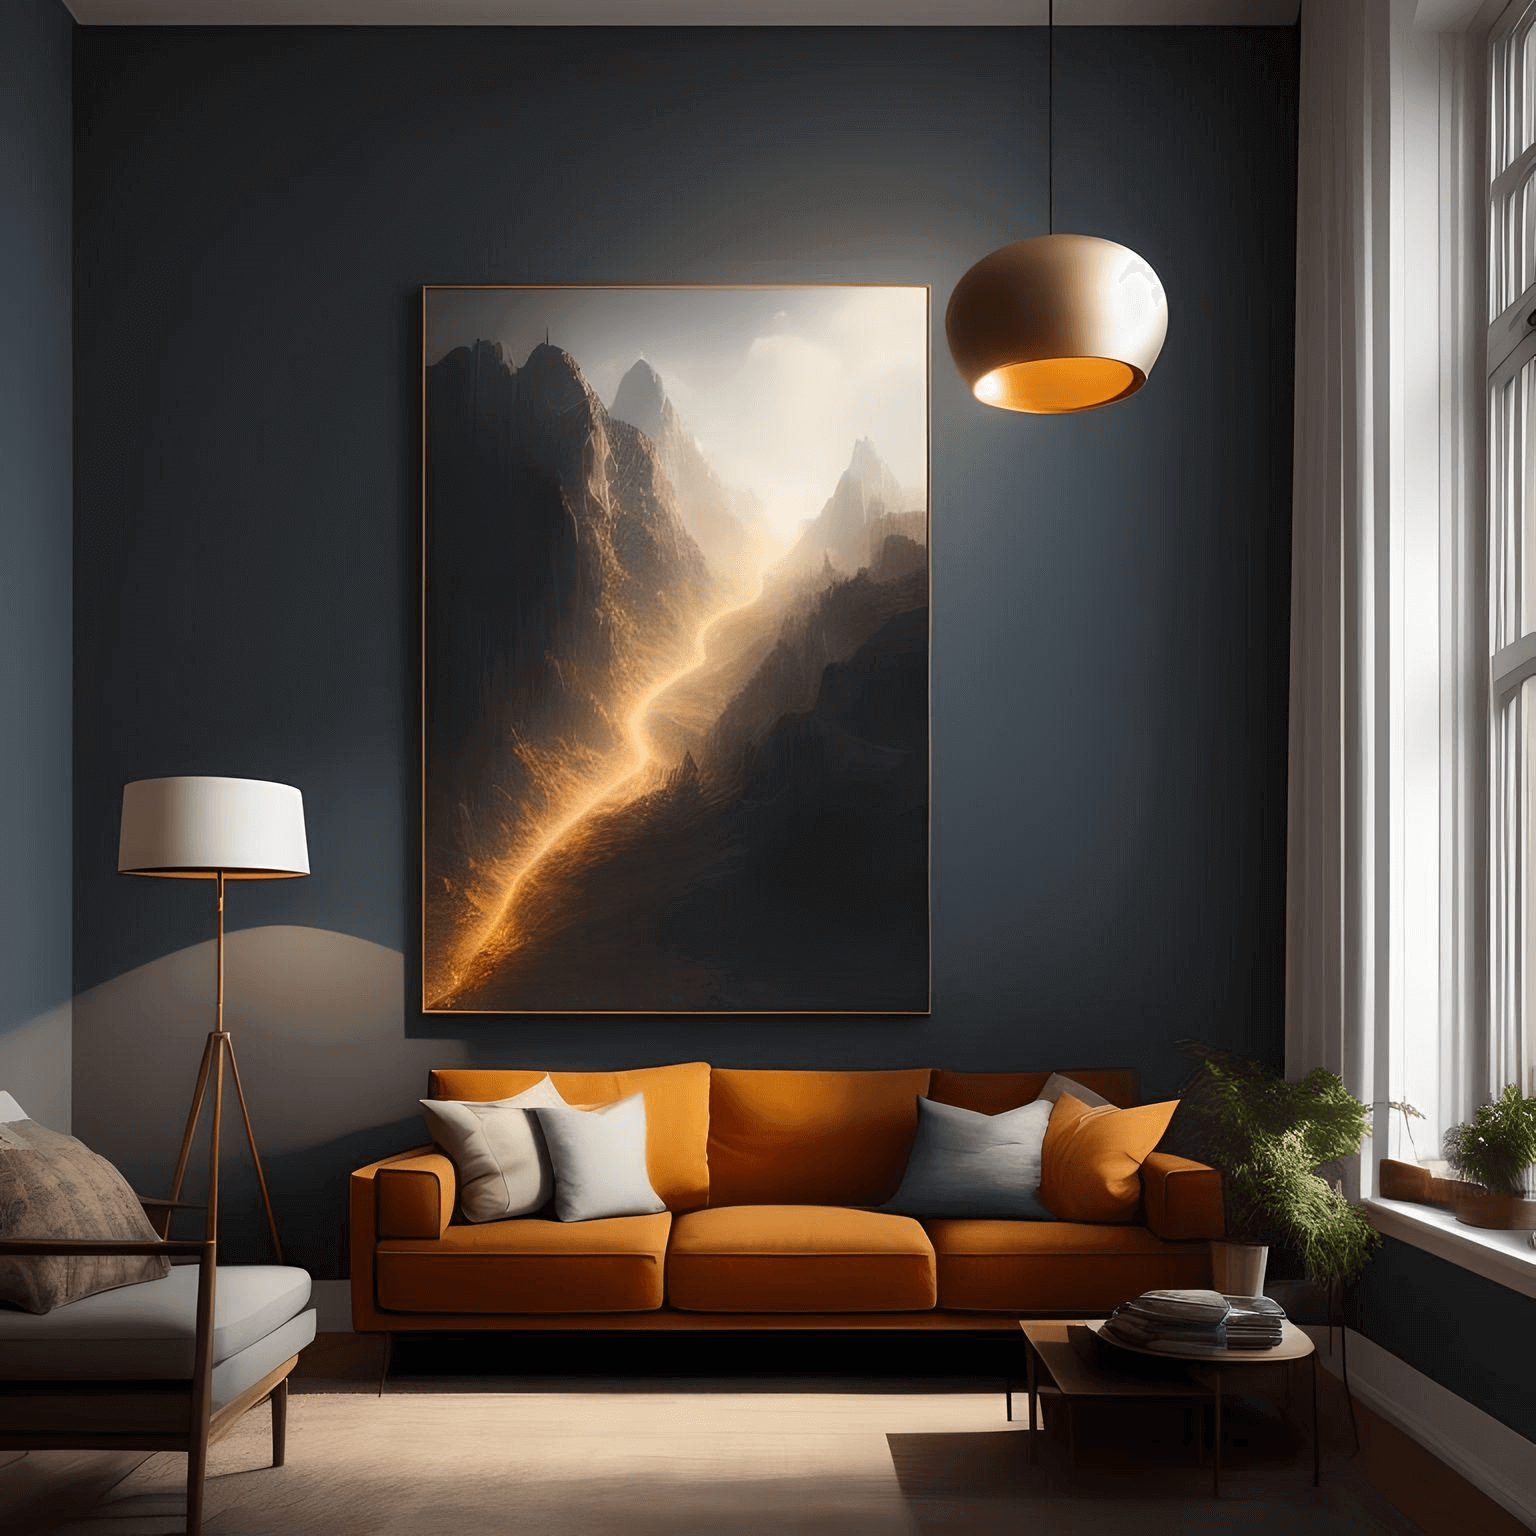 lighting in interior design